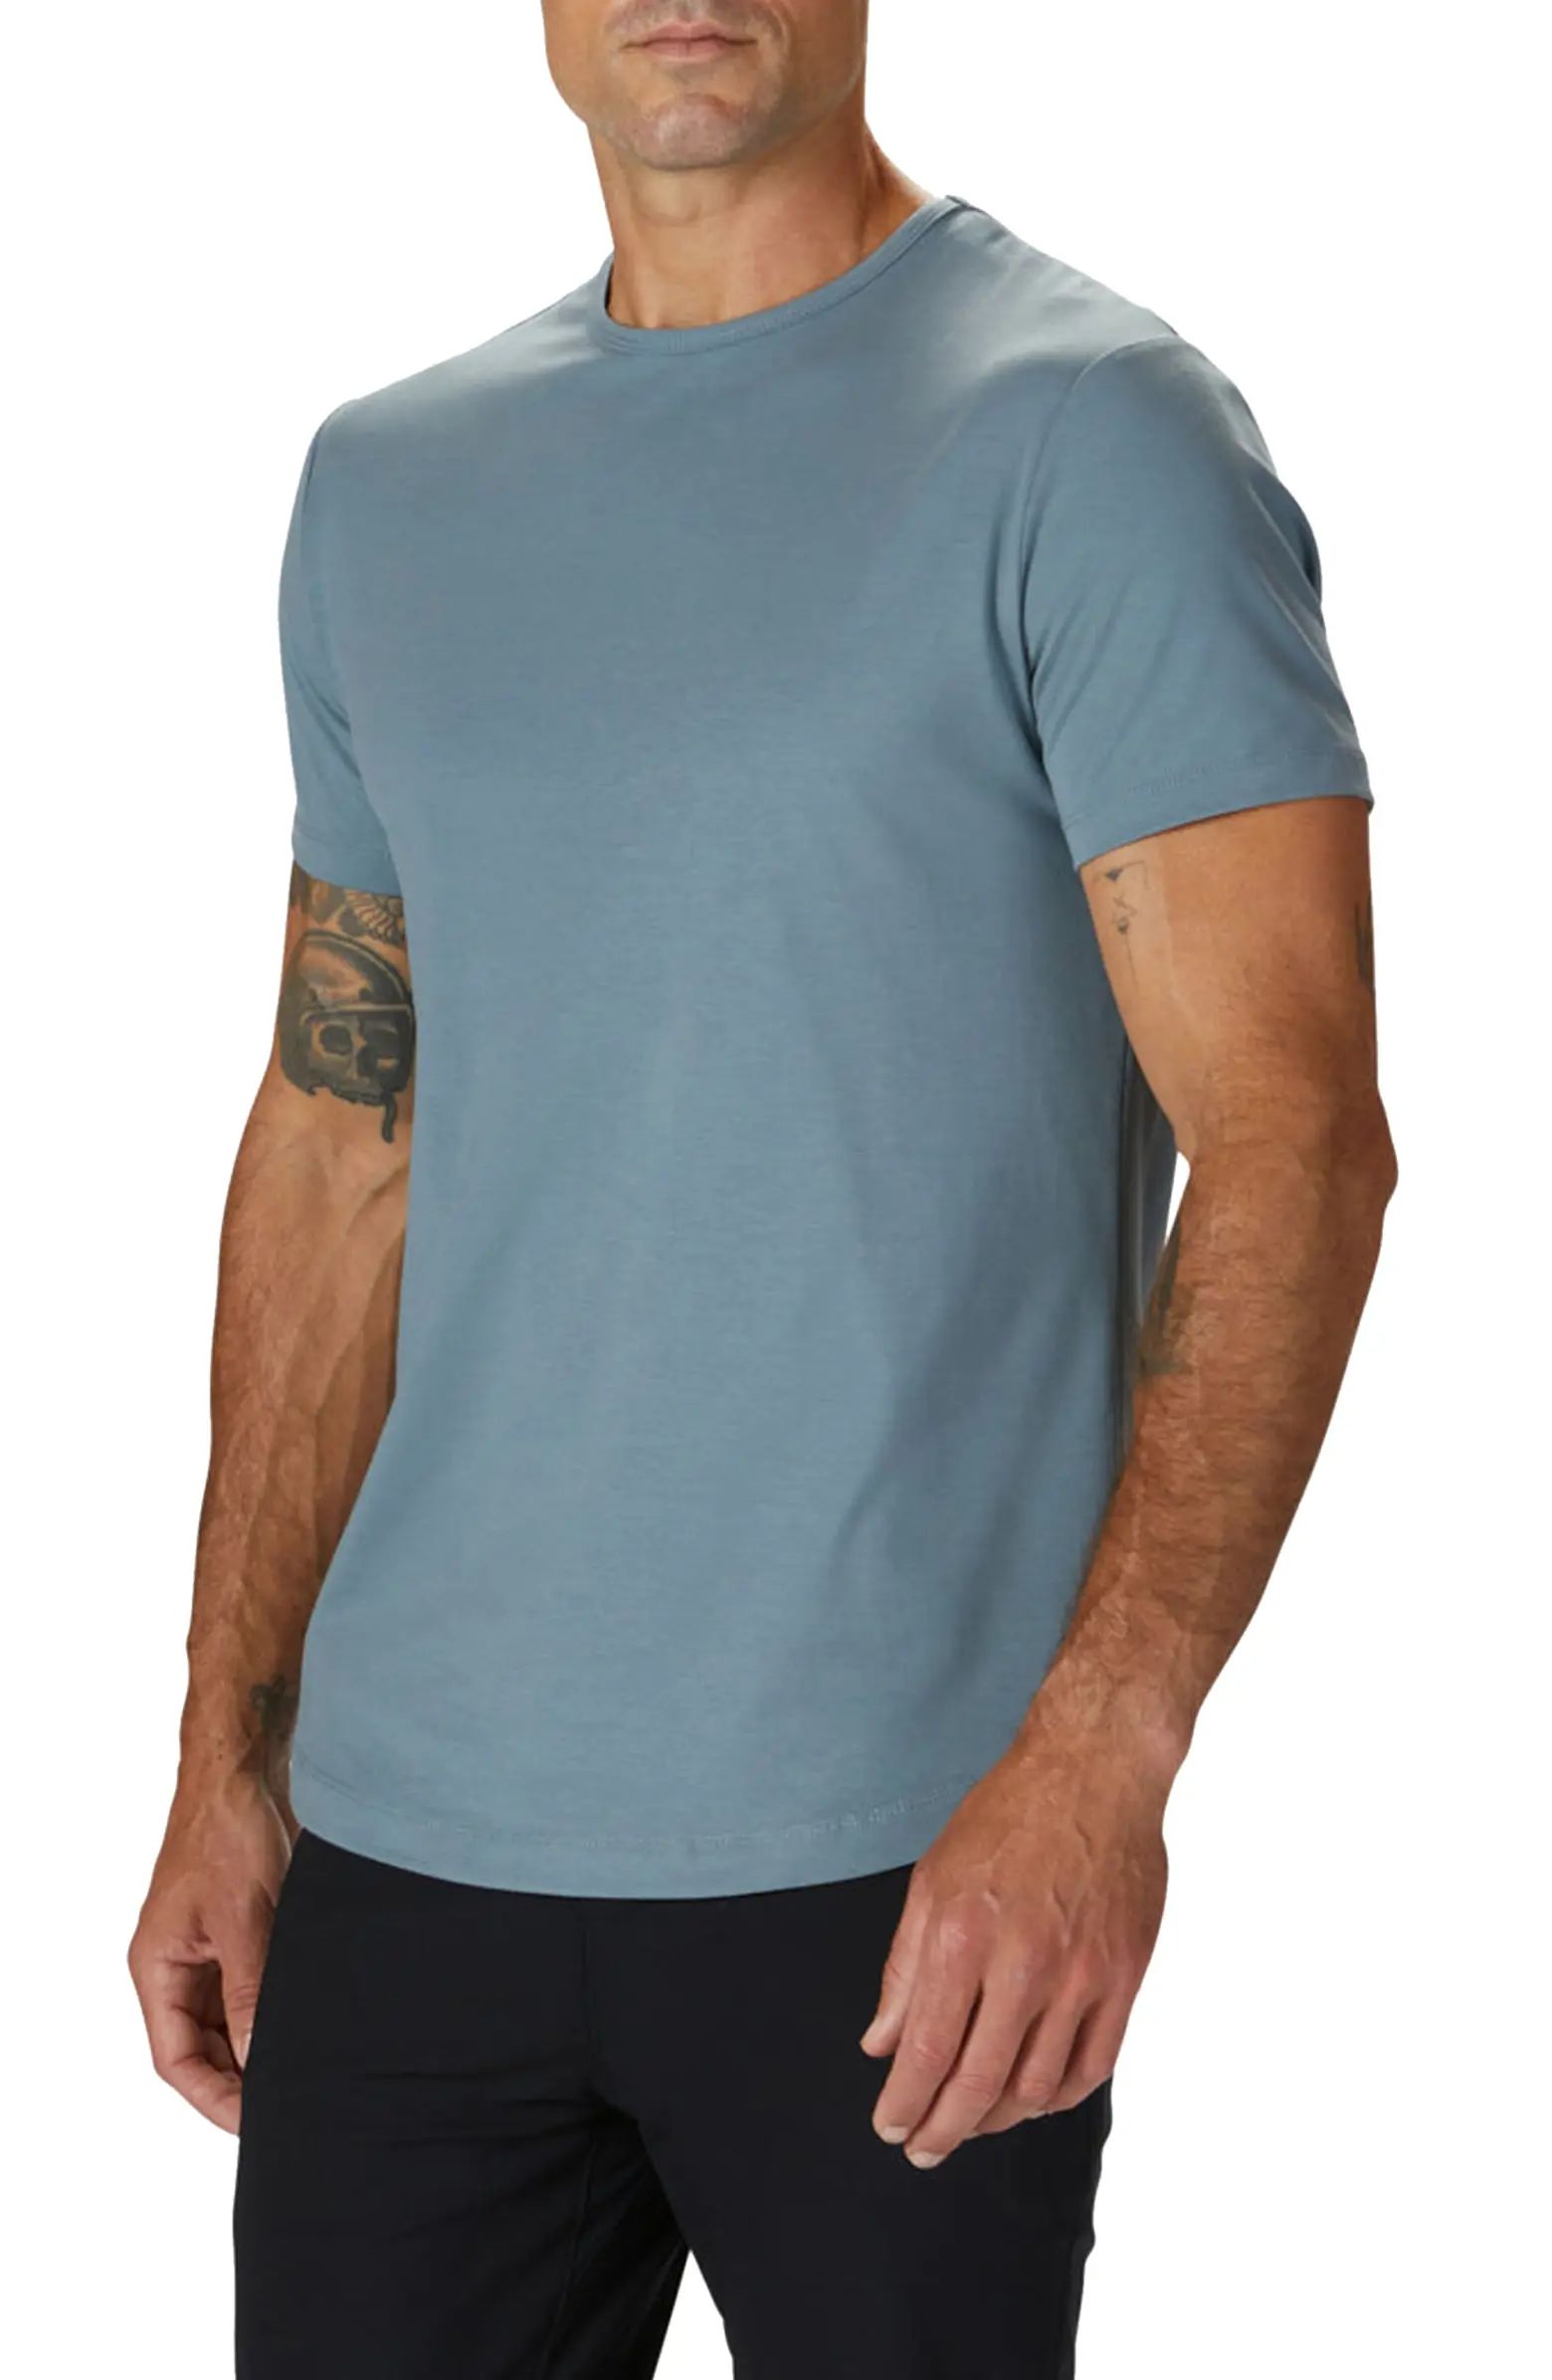 Trim Fit Crewneck Cotton Blend T-Shirt | Nordstrom